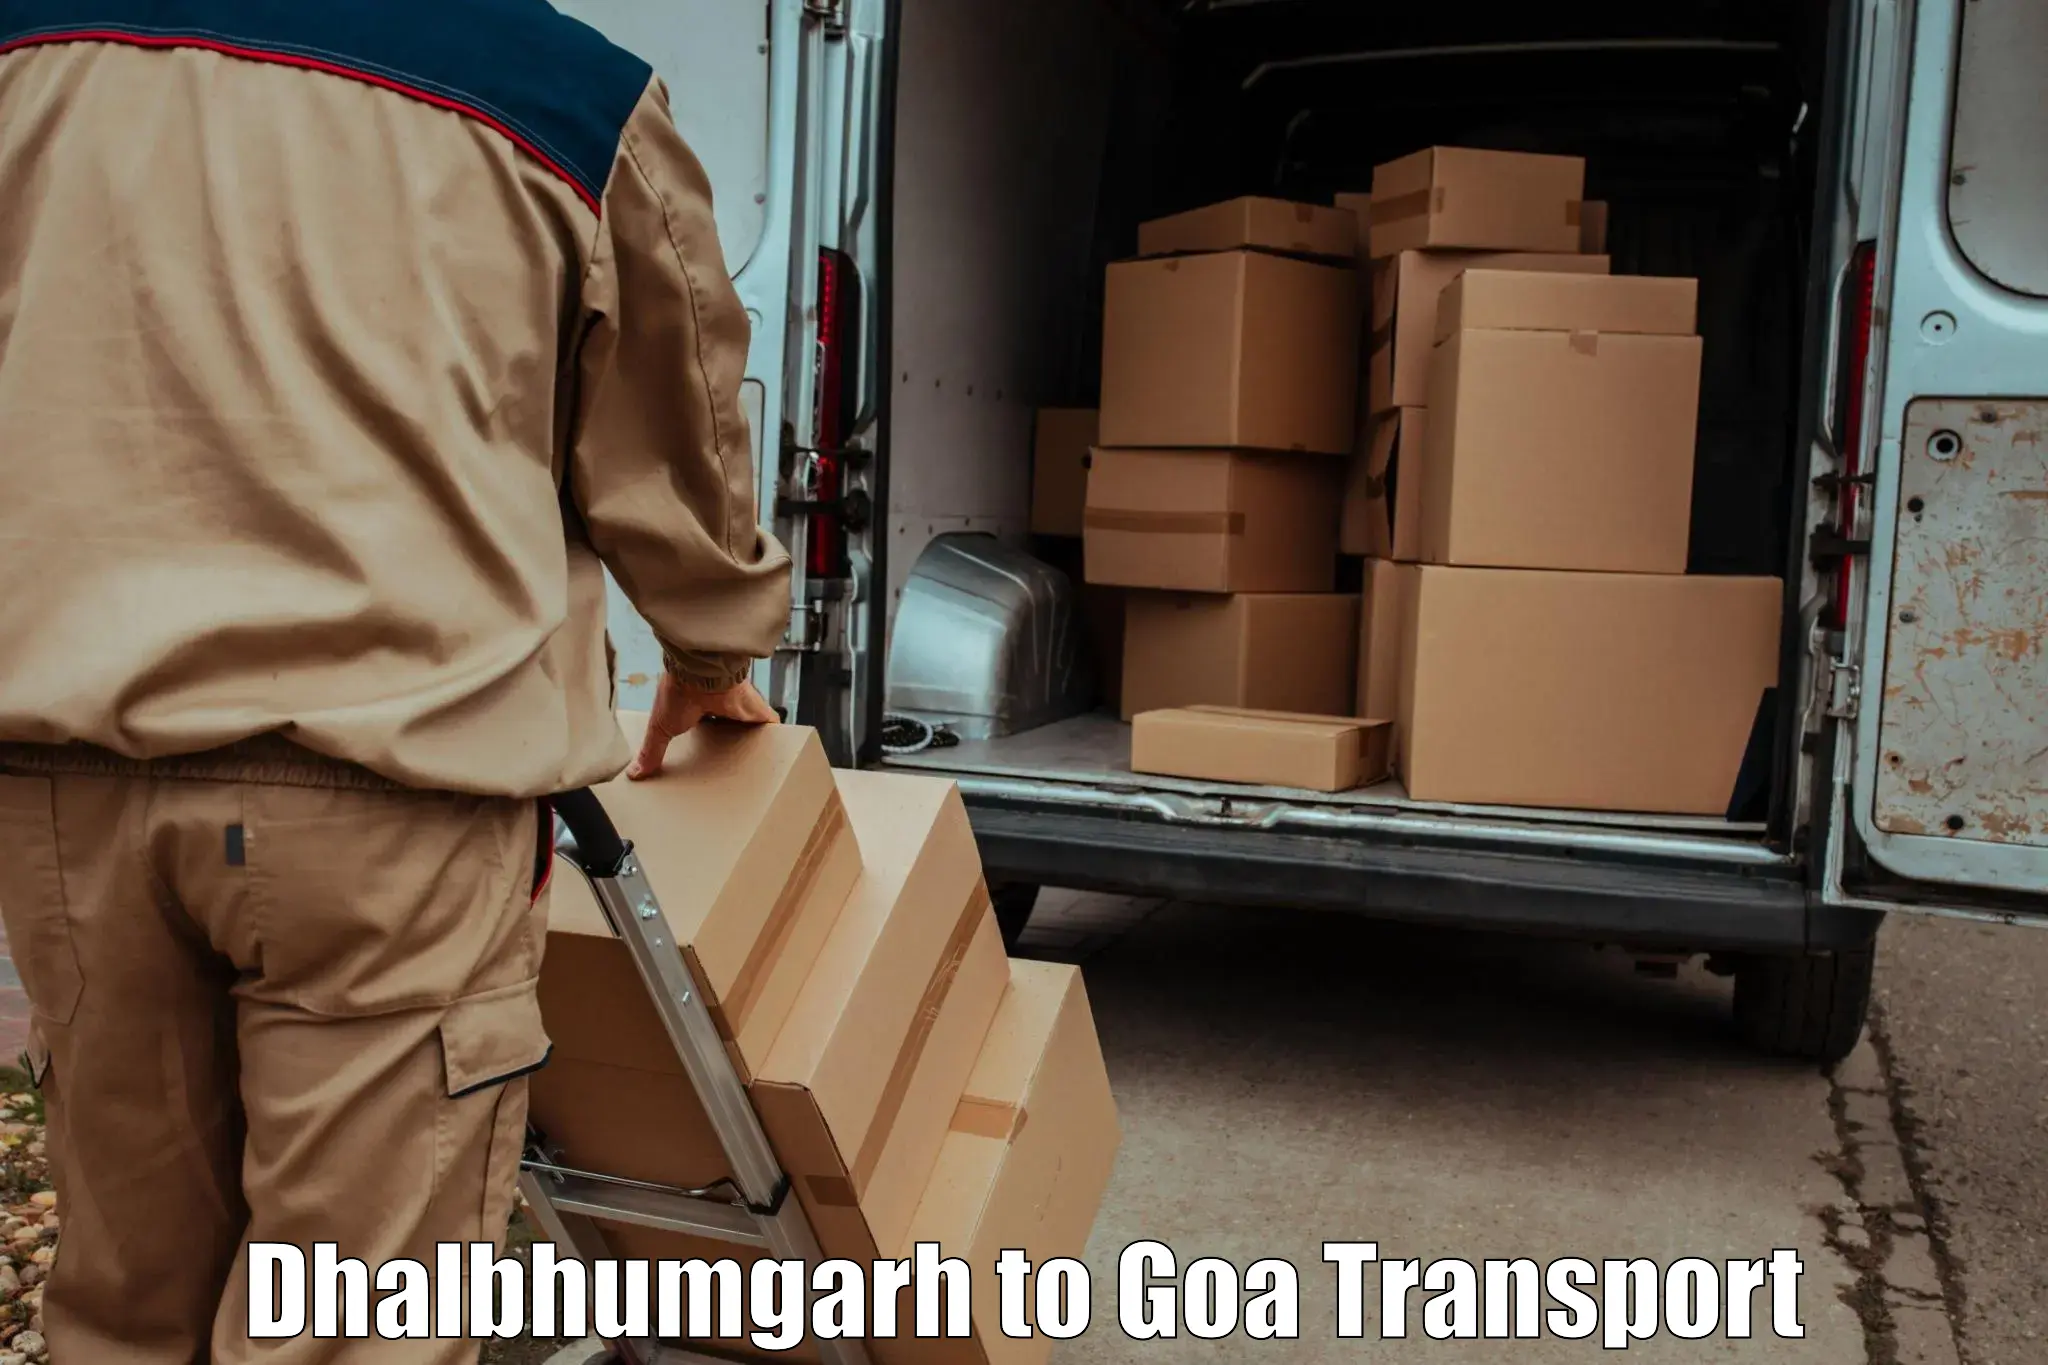 Transport shared services Dhalbhumgarh to Sanvordem